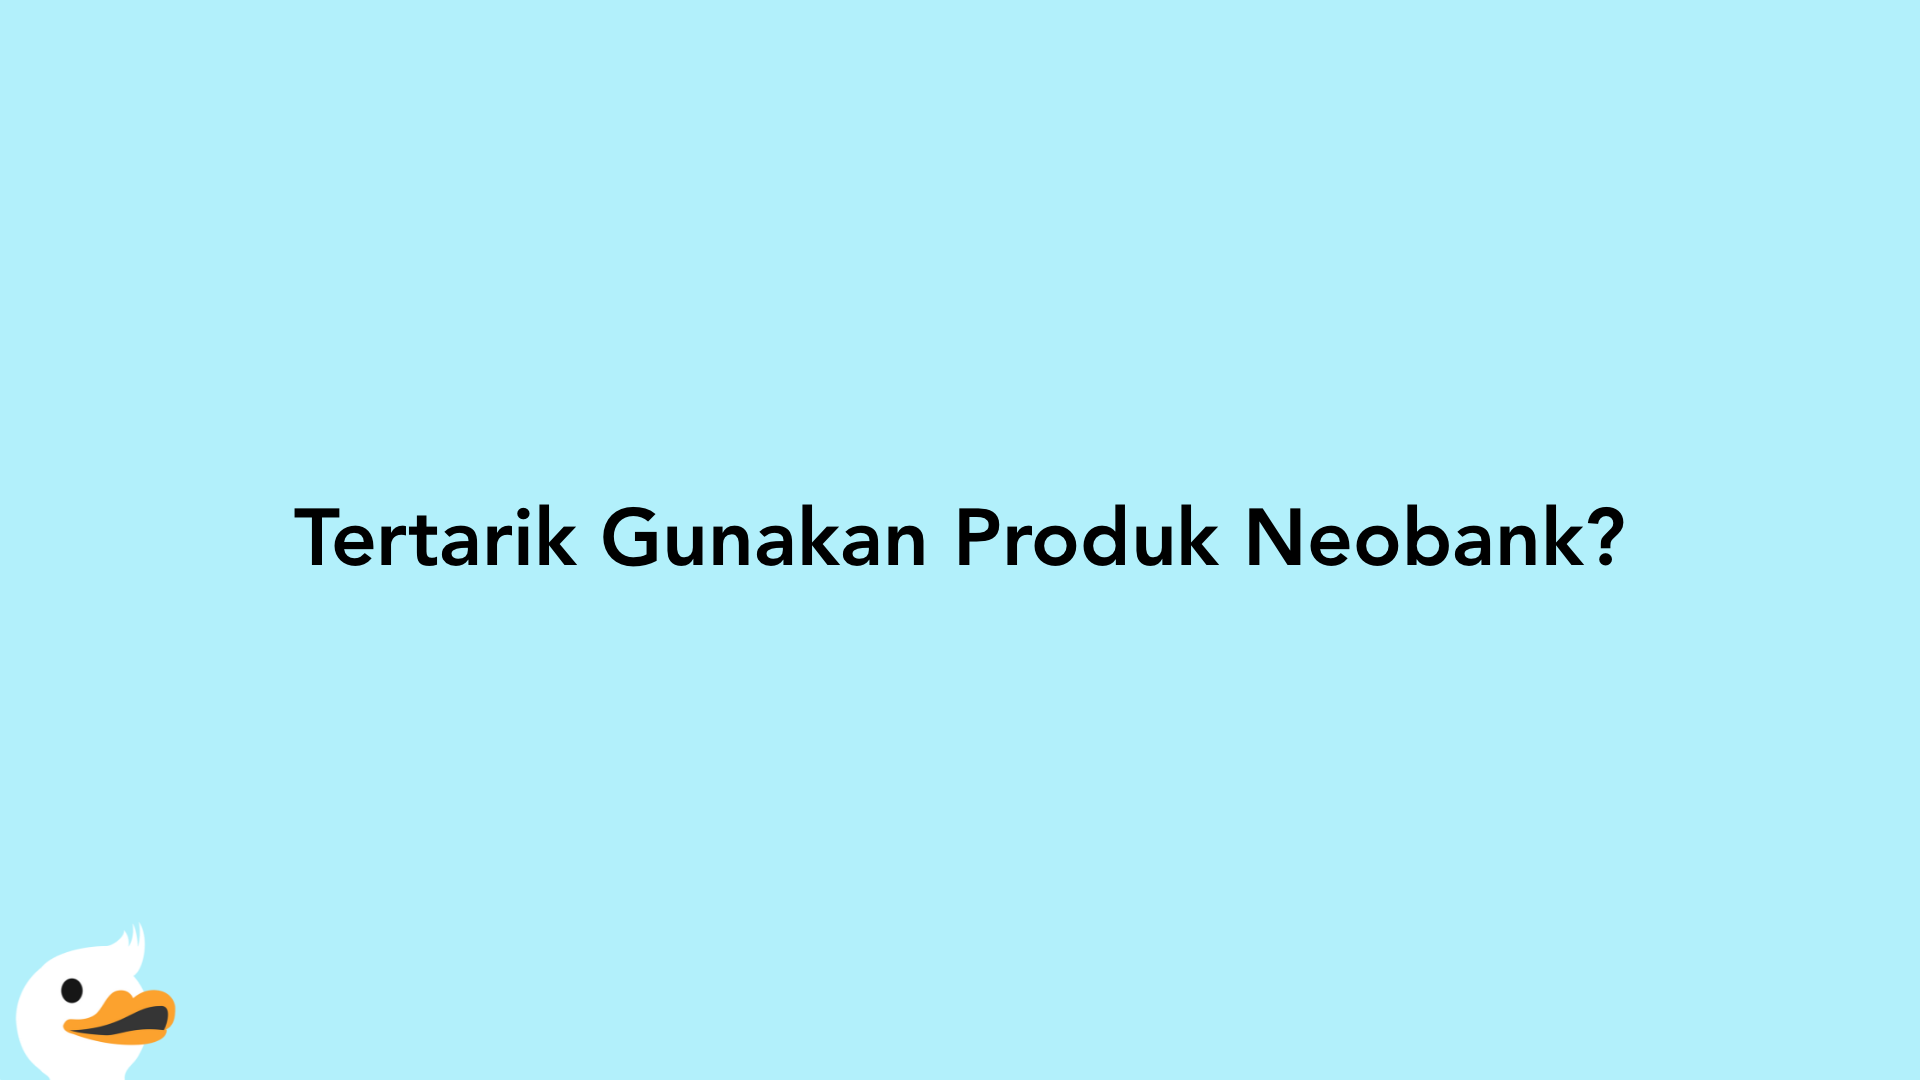 Tertarik Gunakan Produk Neobank?